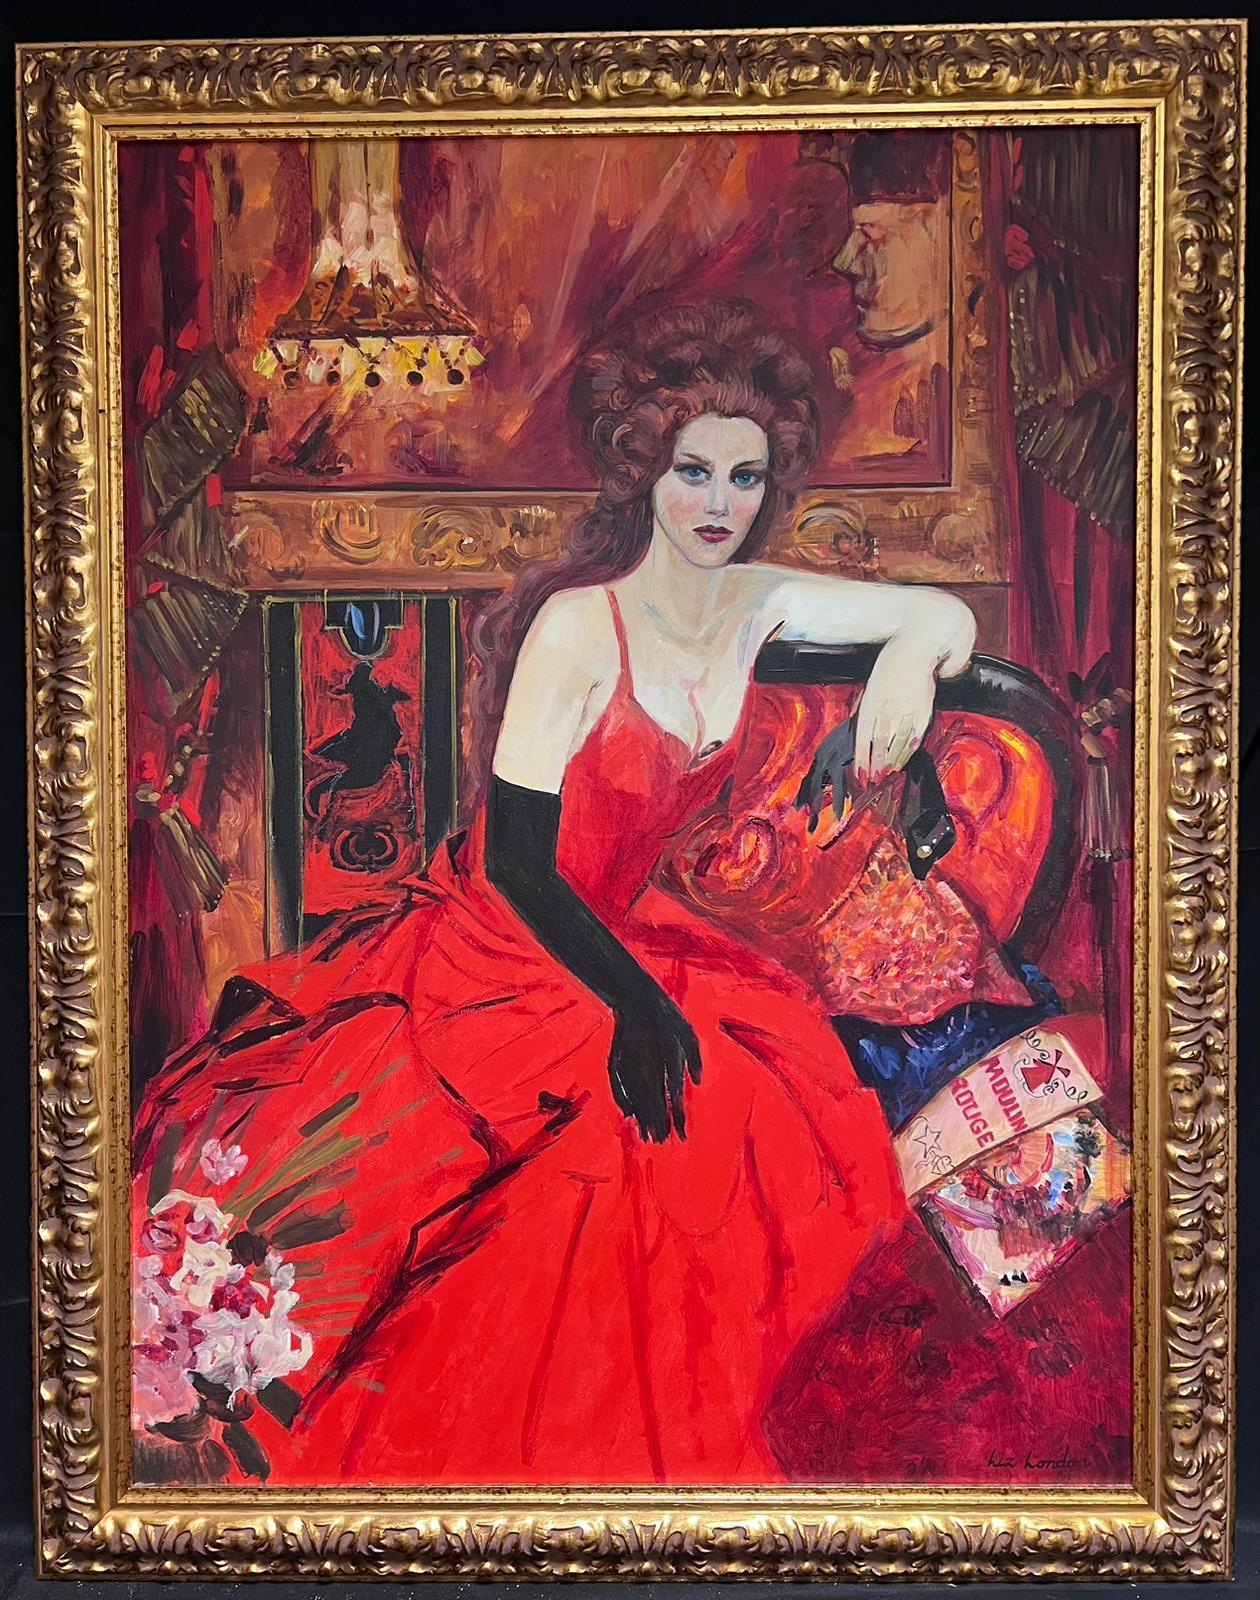 Großes britisches Porträtgemälde Nicole Kidman Moulin Rouge Royal Academy, Ausstellungsausstellung – Painting von Liz London